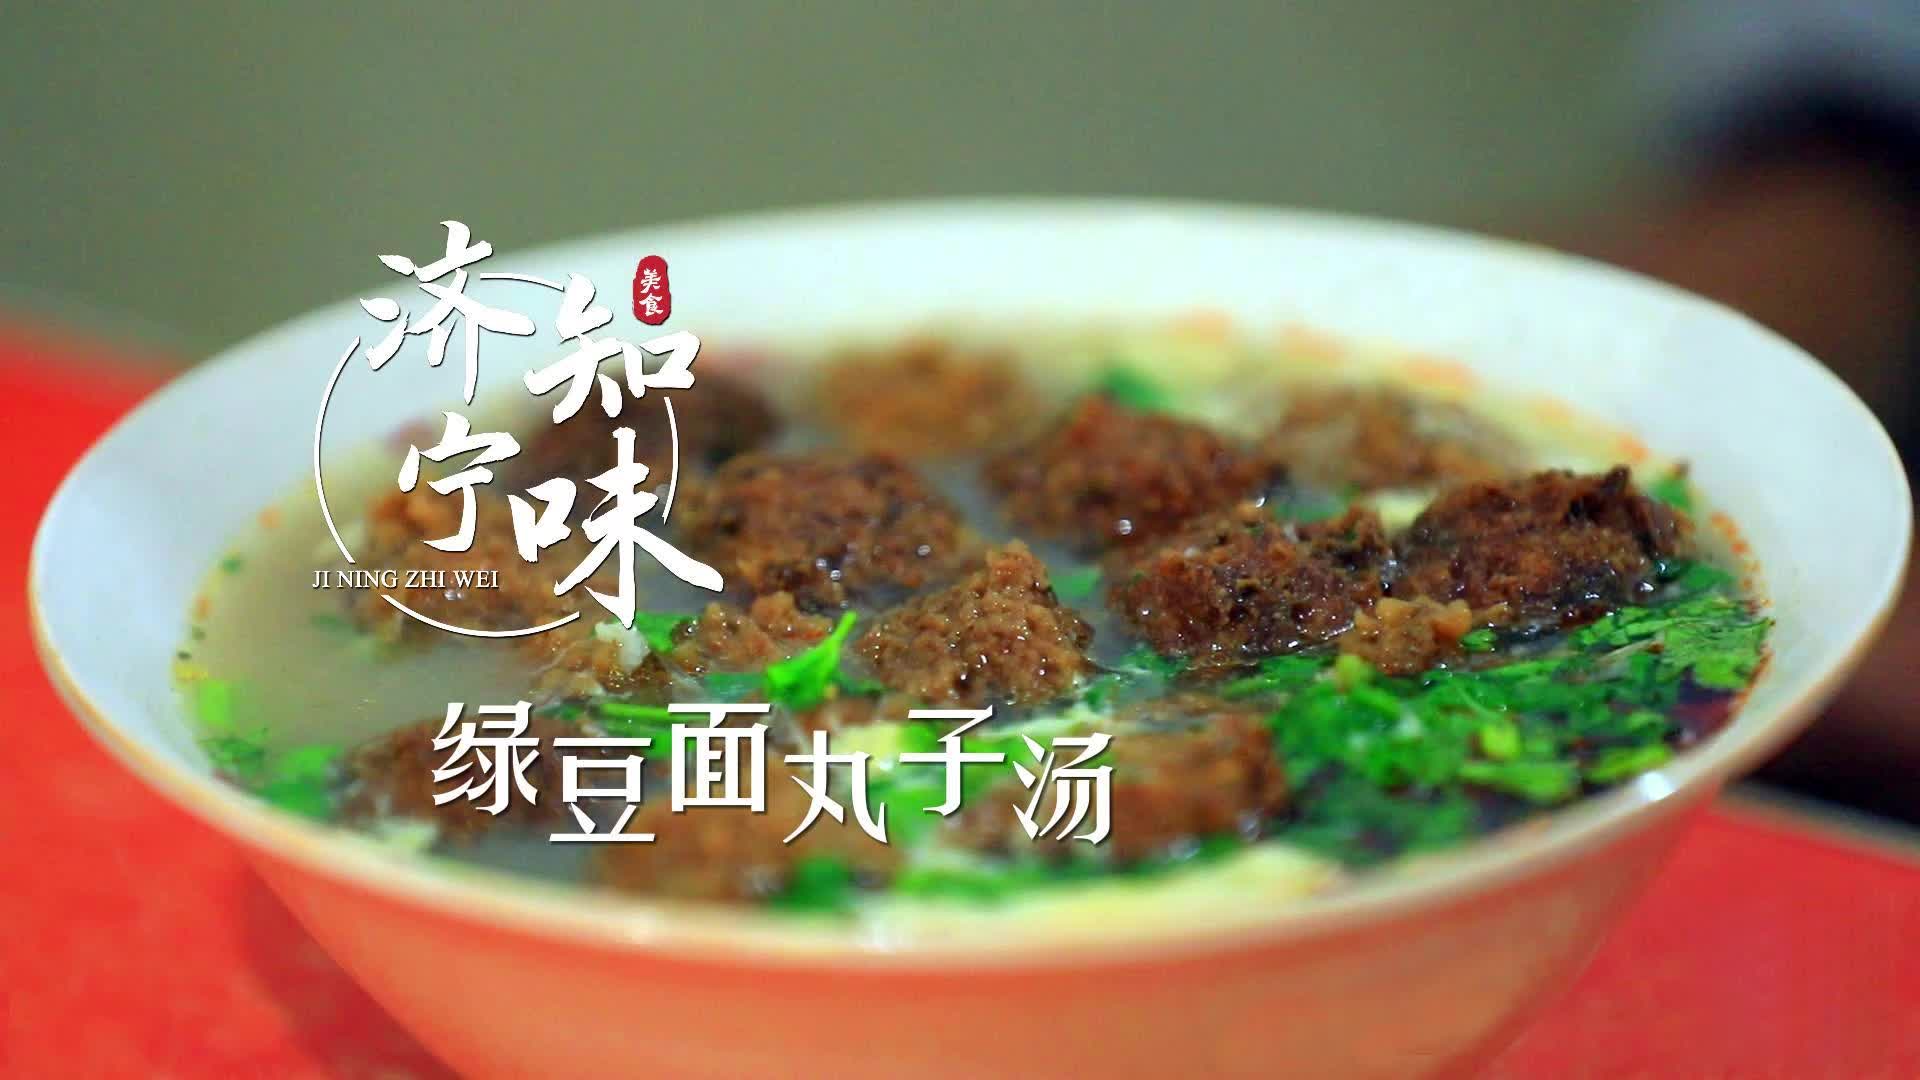 更济宁 | 济宁知味——绿豆面丸子汤